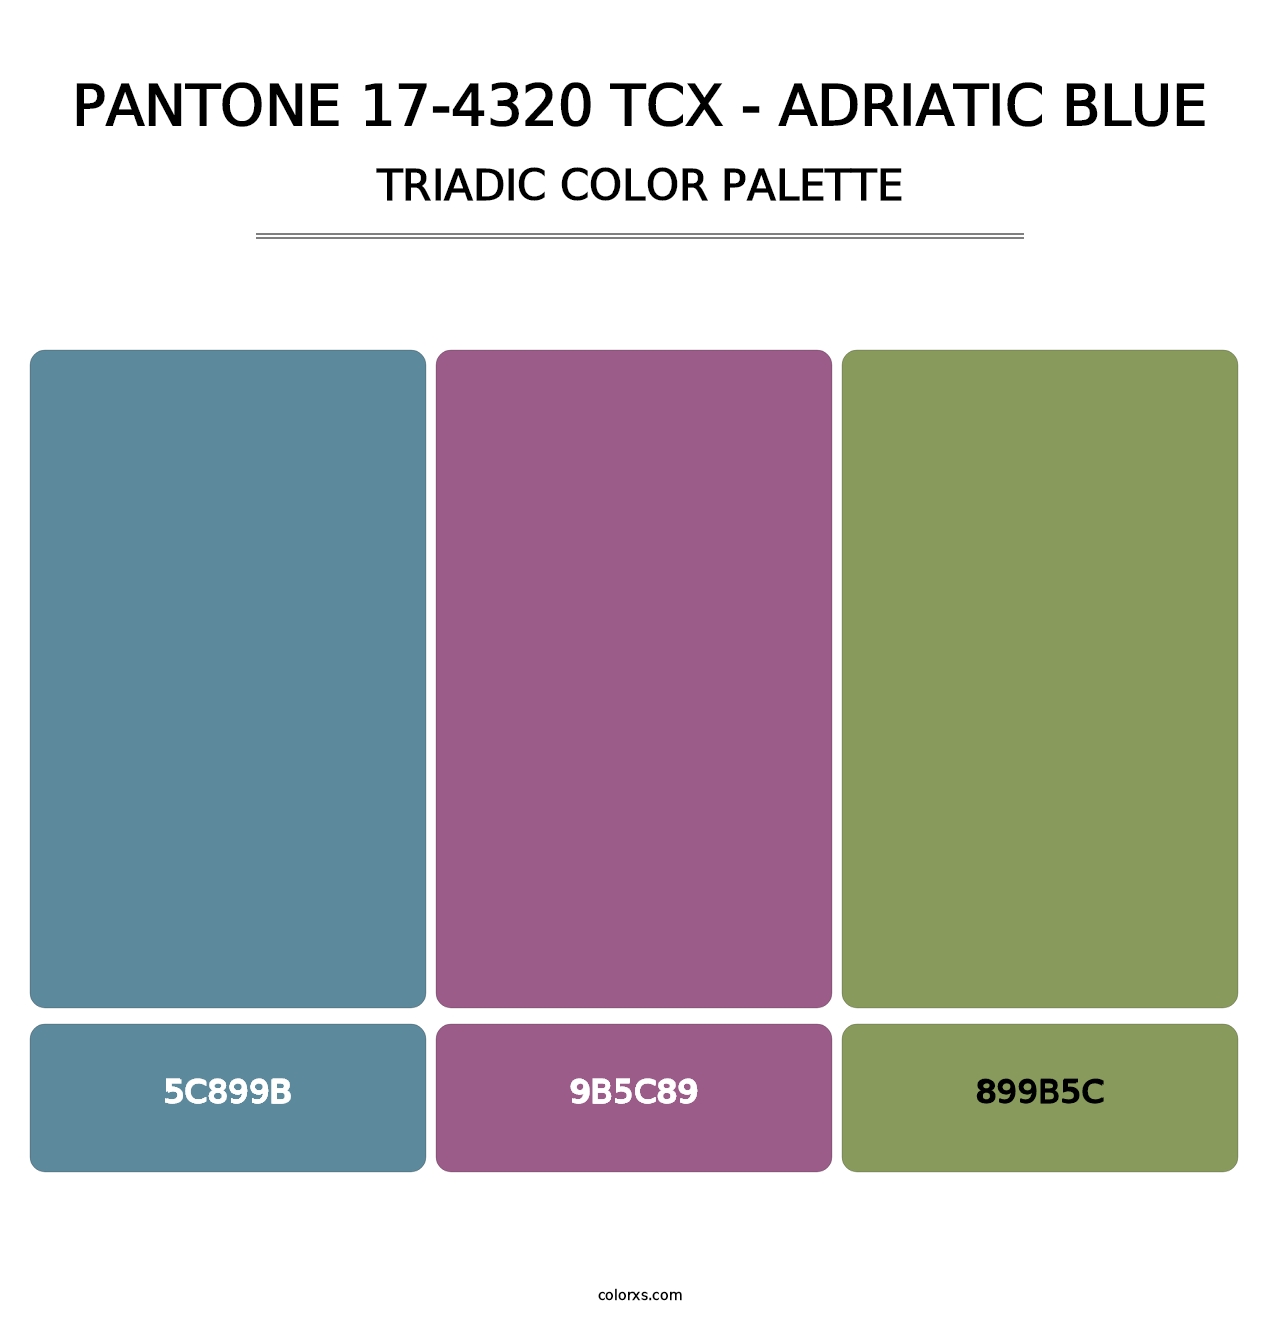 PANTONE 17-4320 TCX - Adriatic Blue - Triadic Color Palette